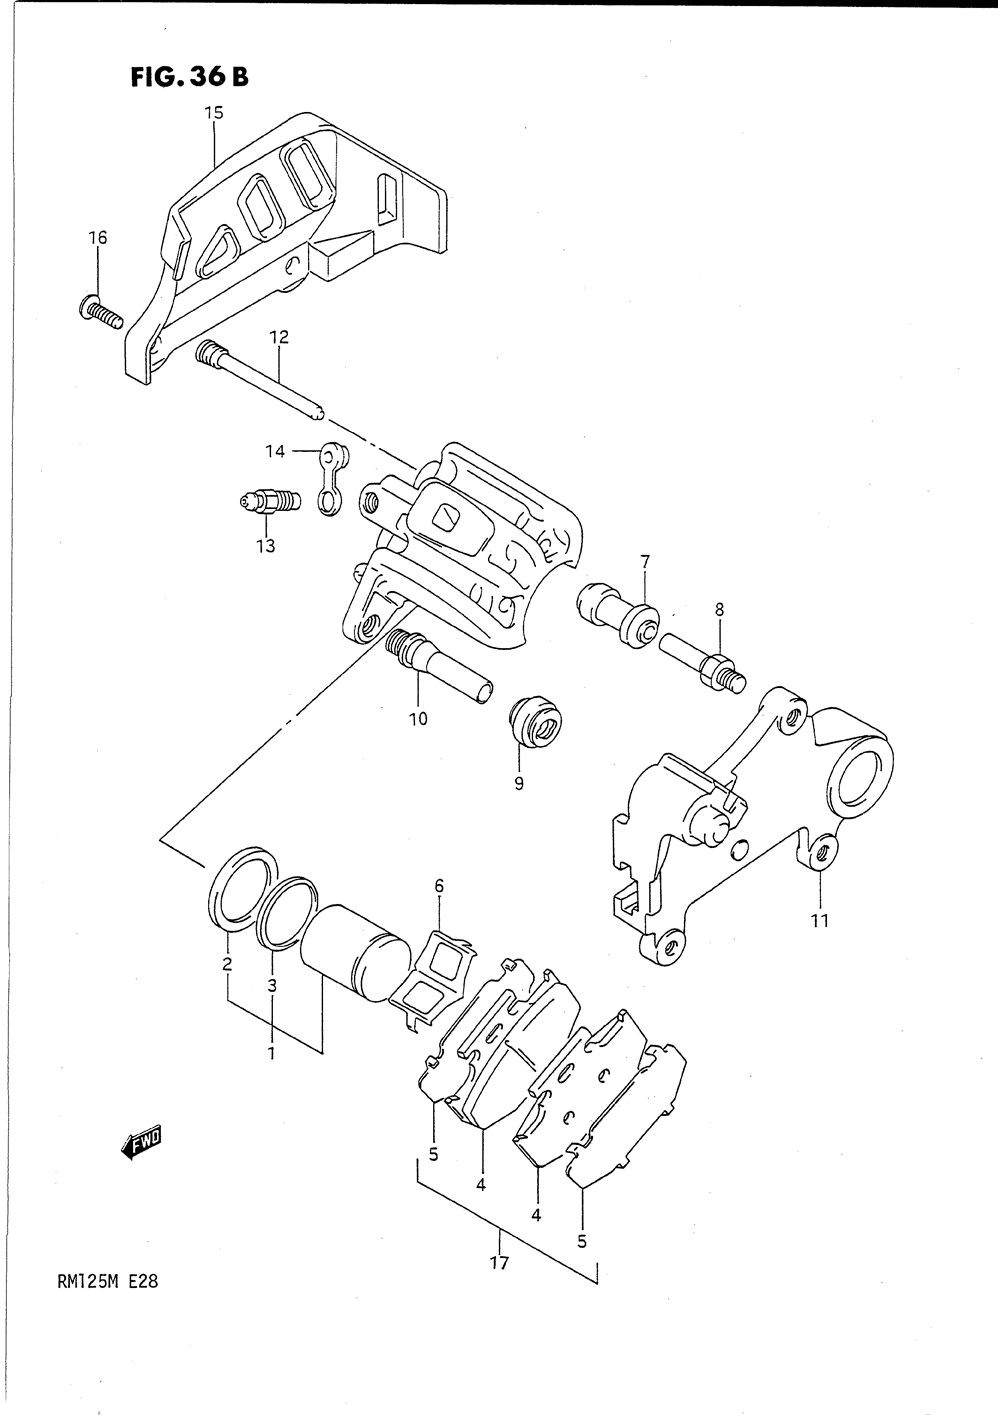 Rear calipers (model m)